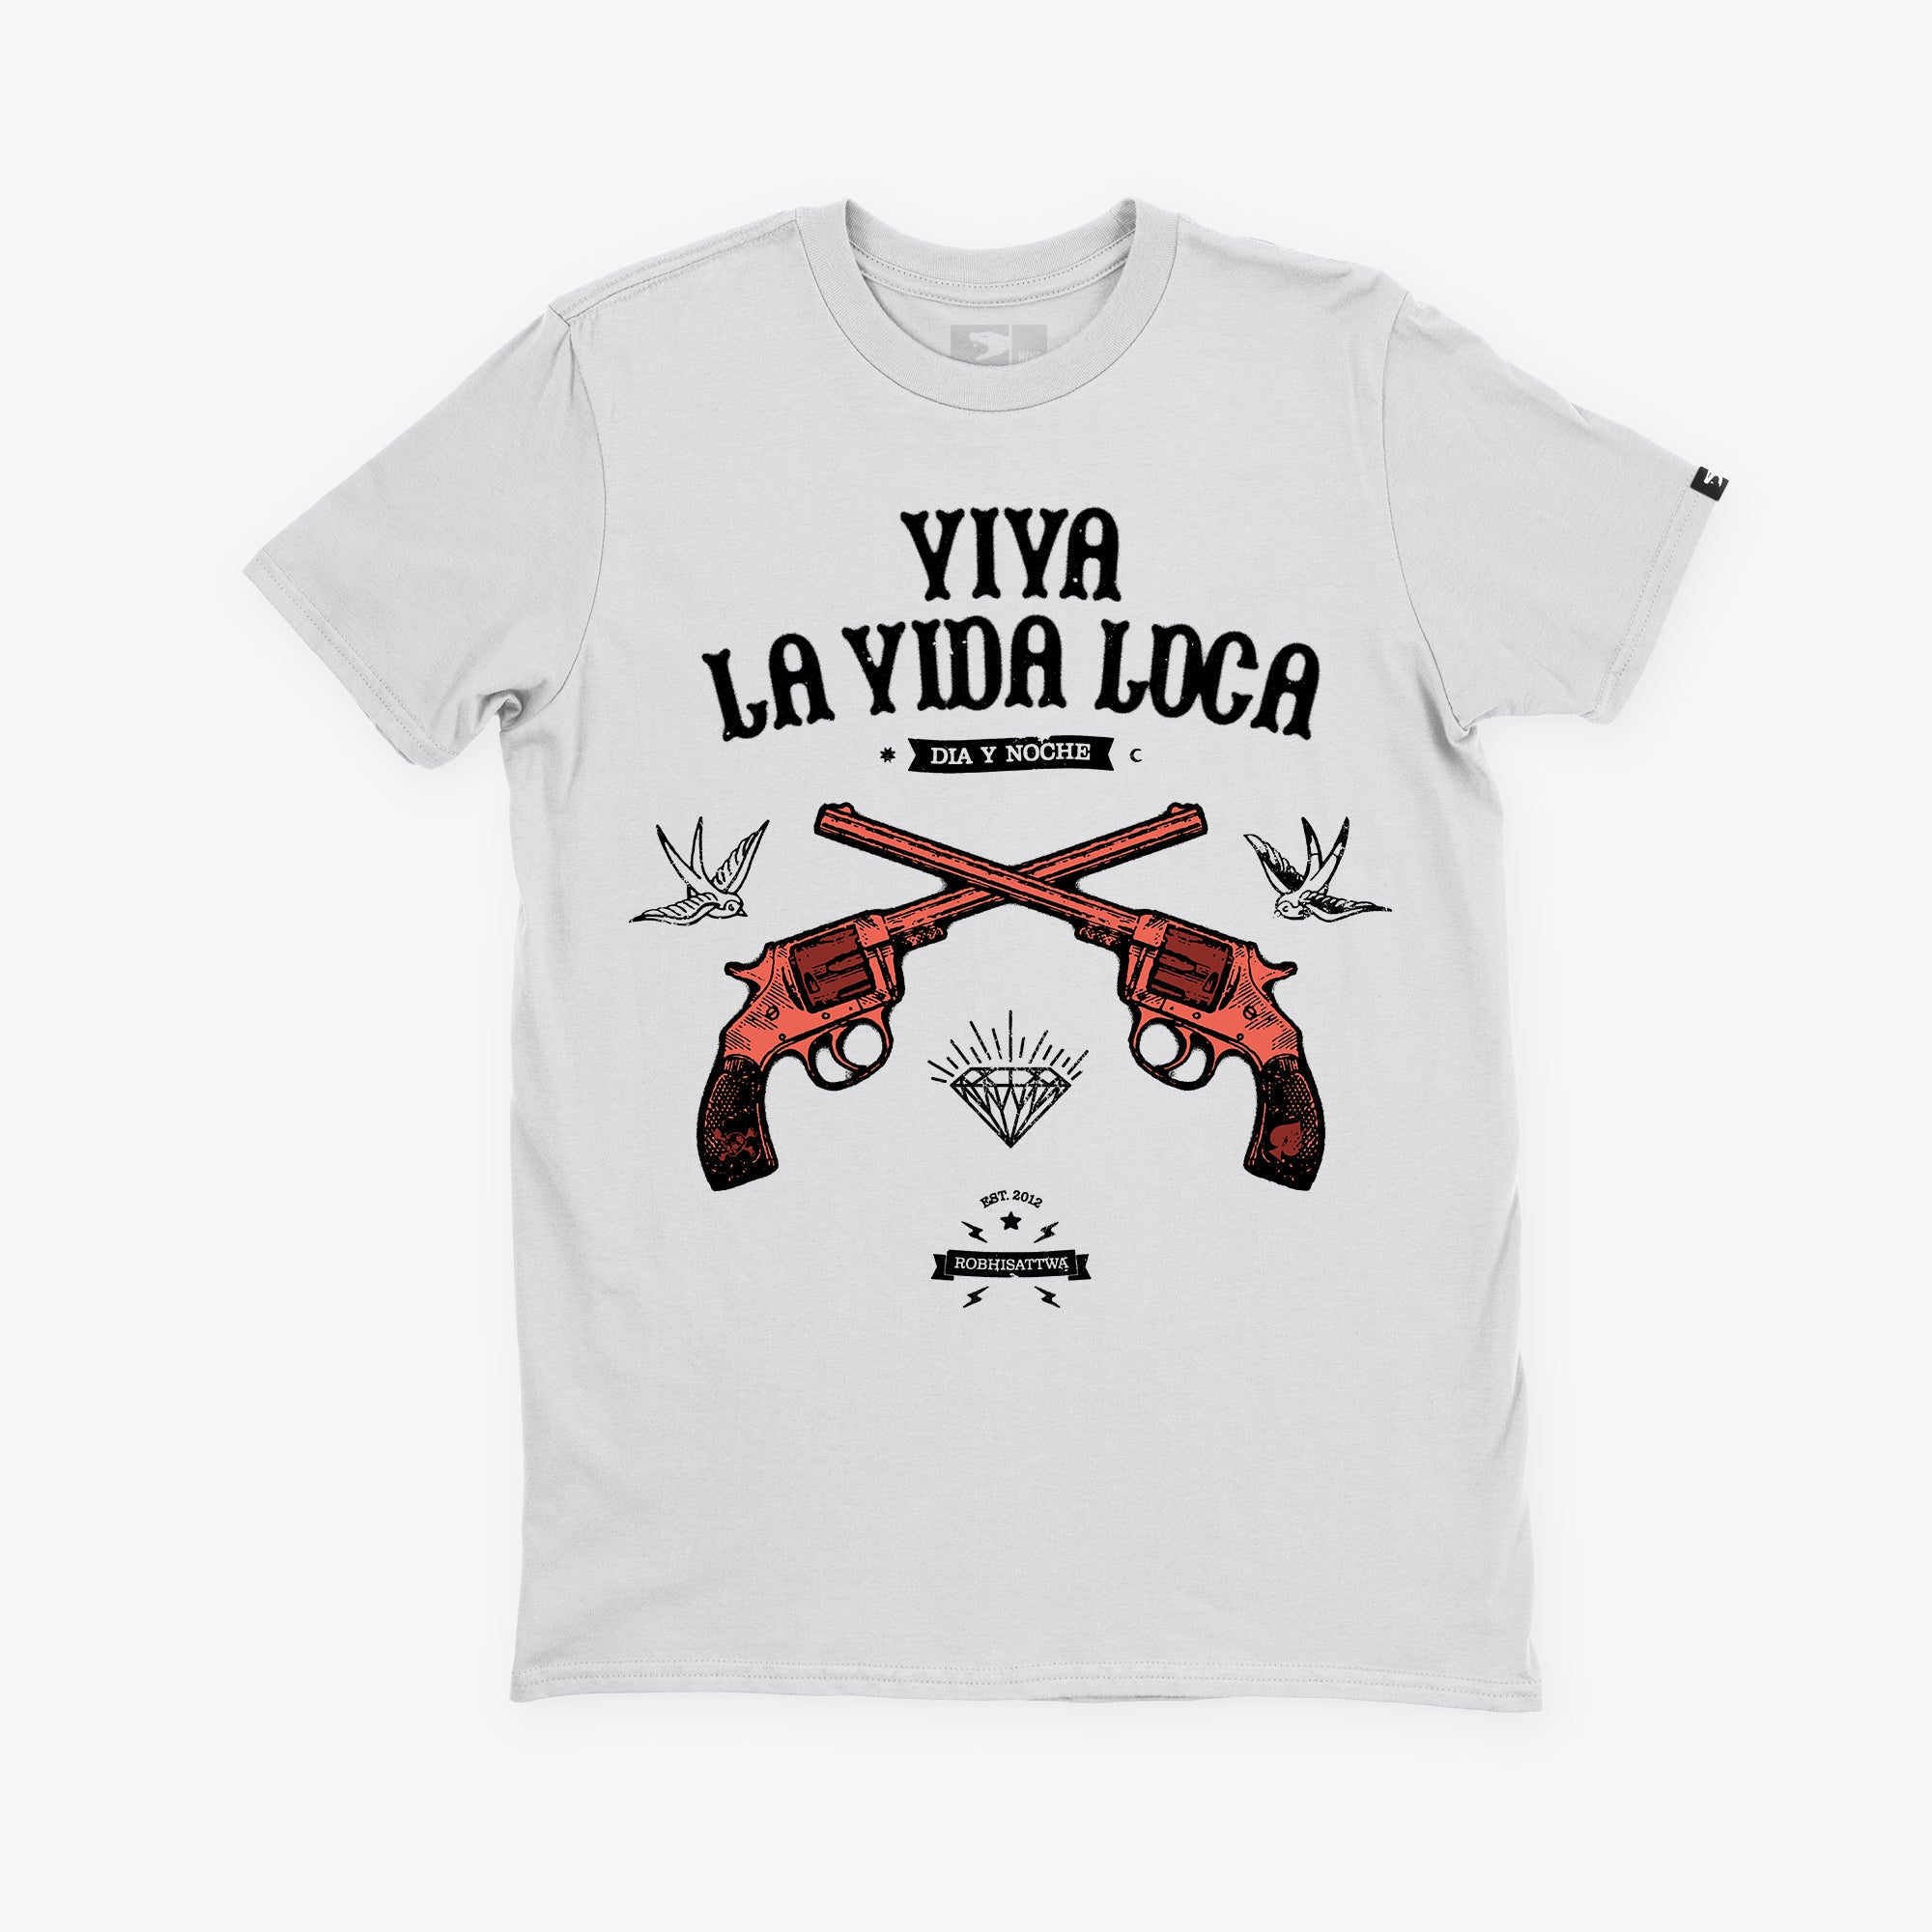 Robhisattwa Viva La Vida Loca Unisex T-Shirt White Front